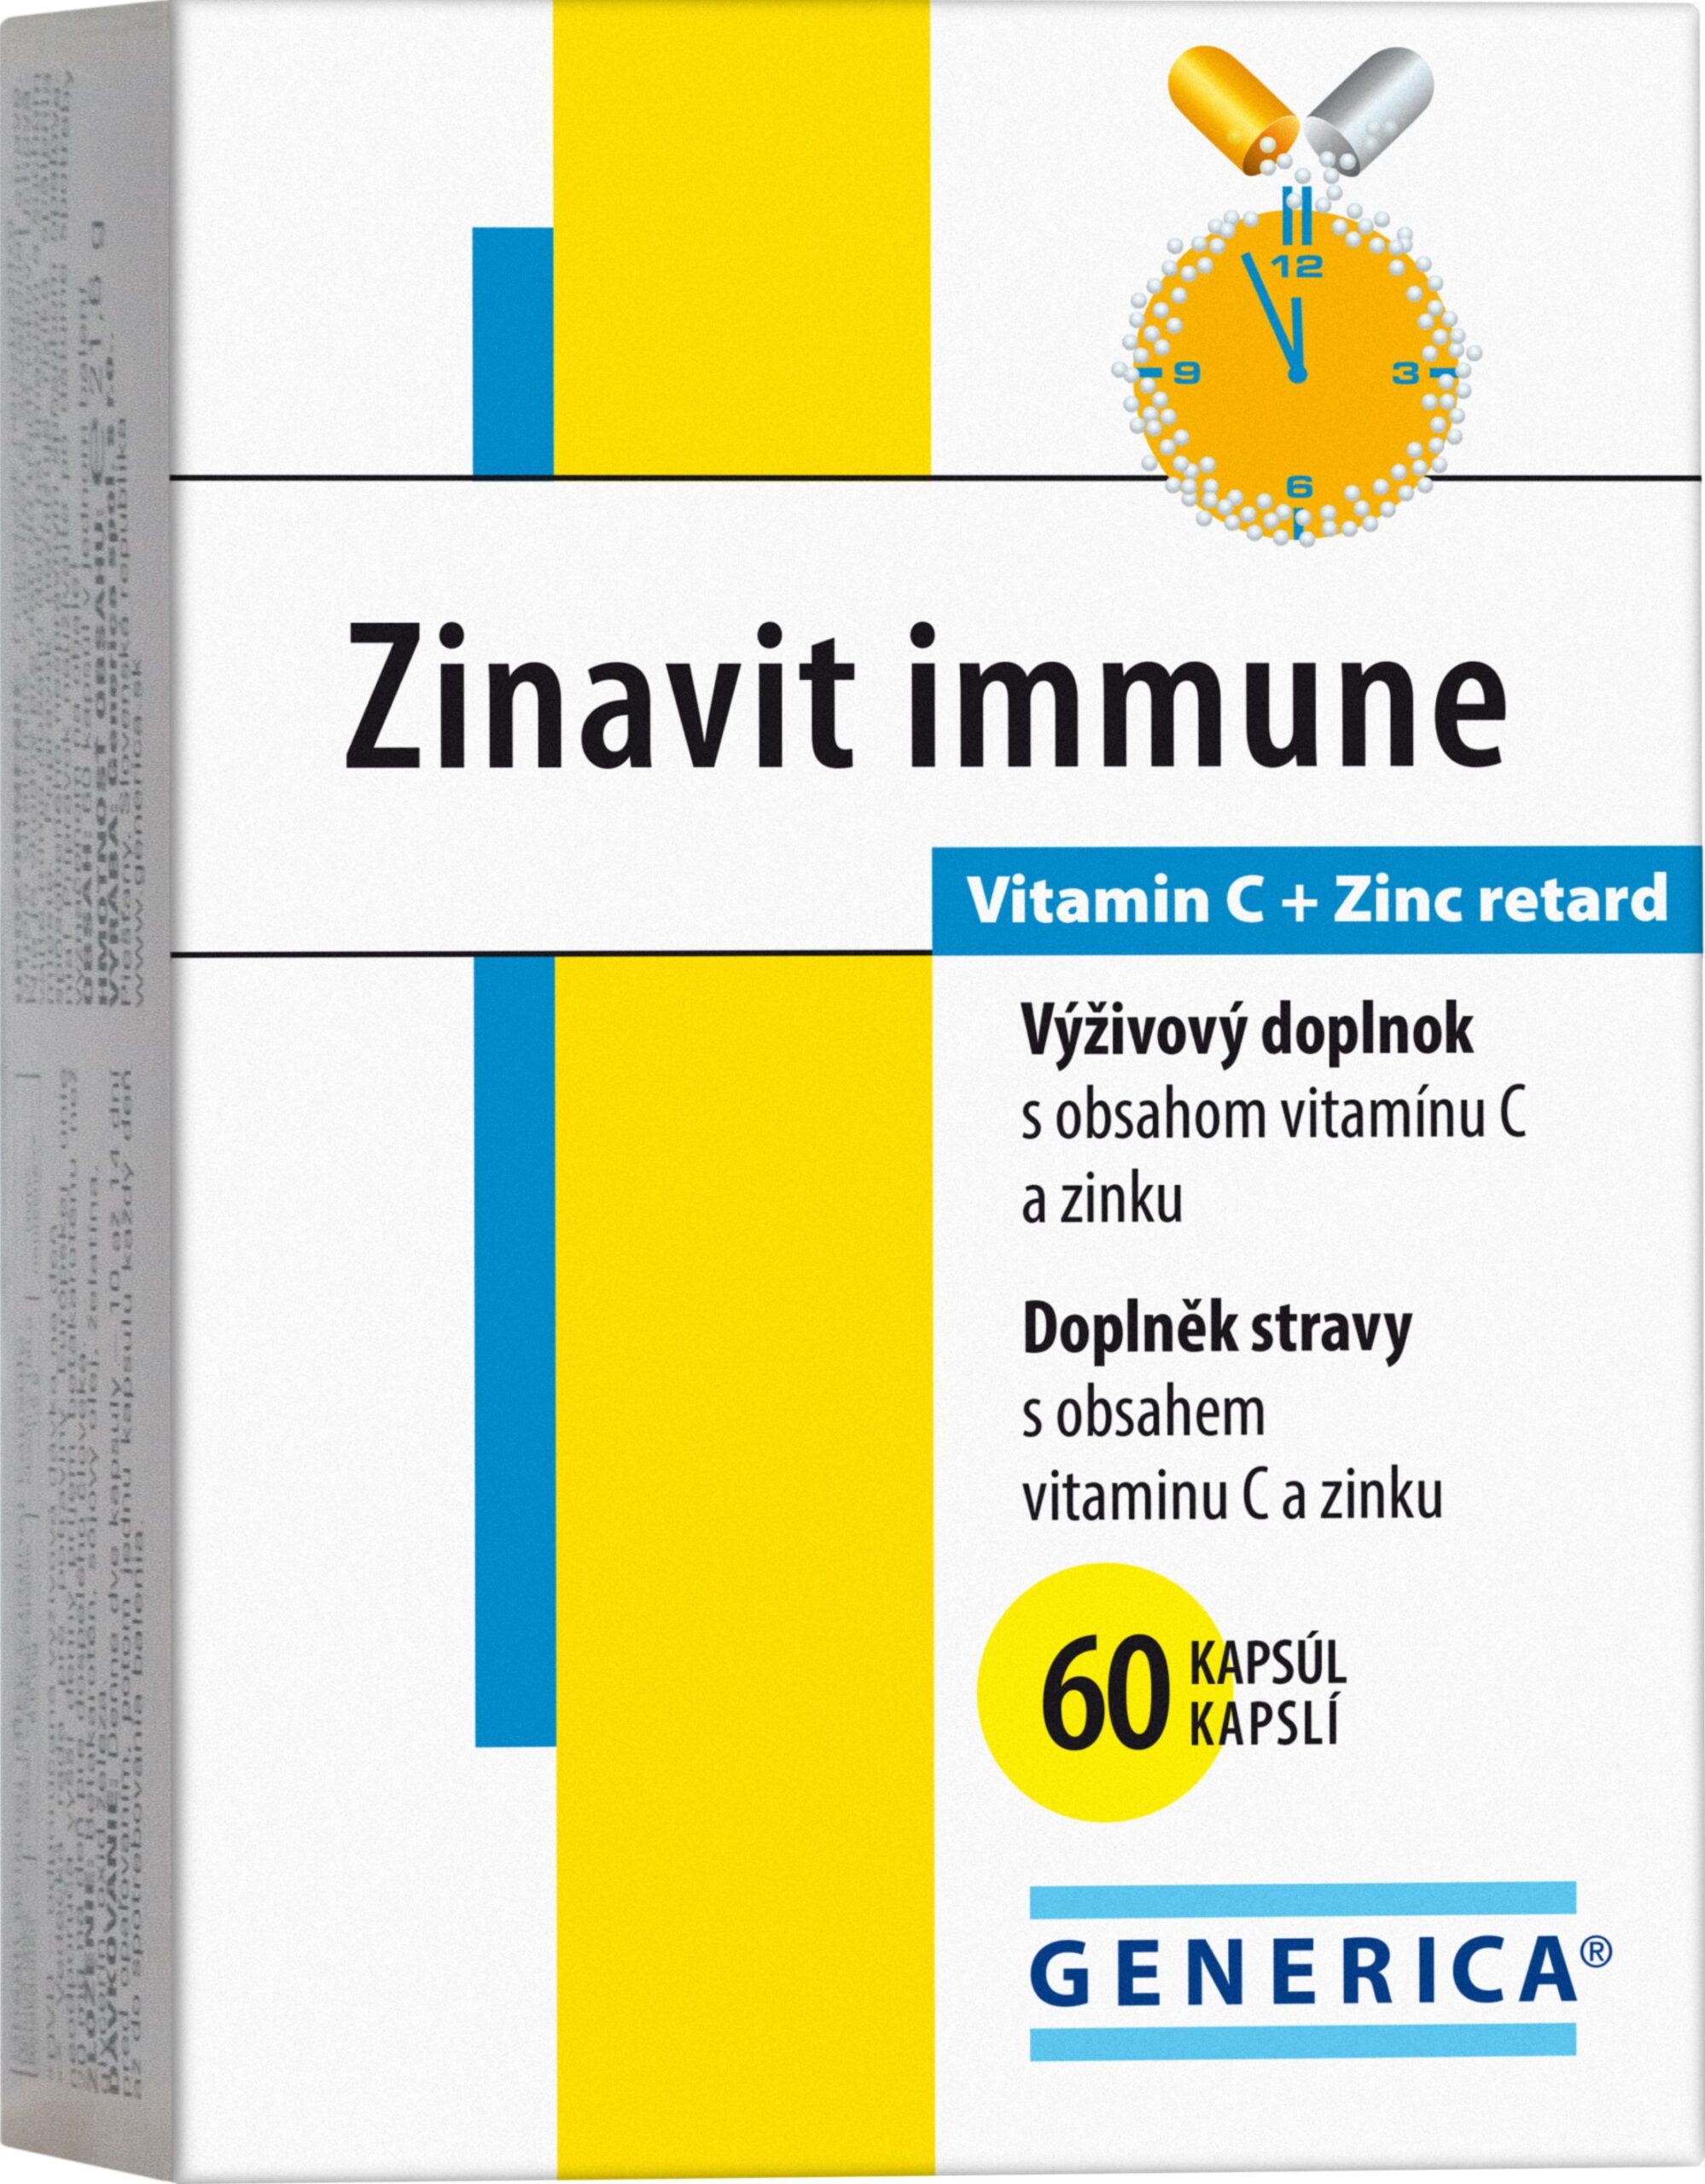 Generica Zinavit immune 60 kapslí Generica